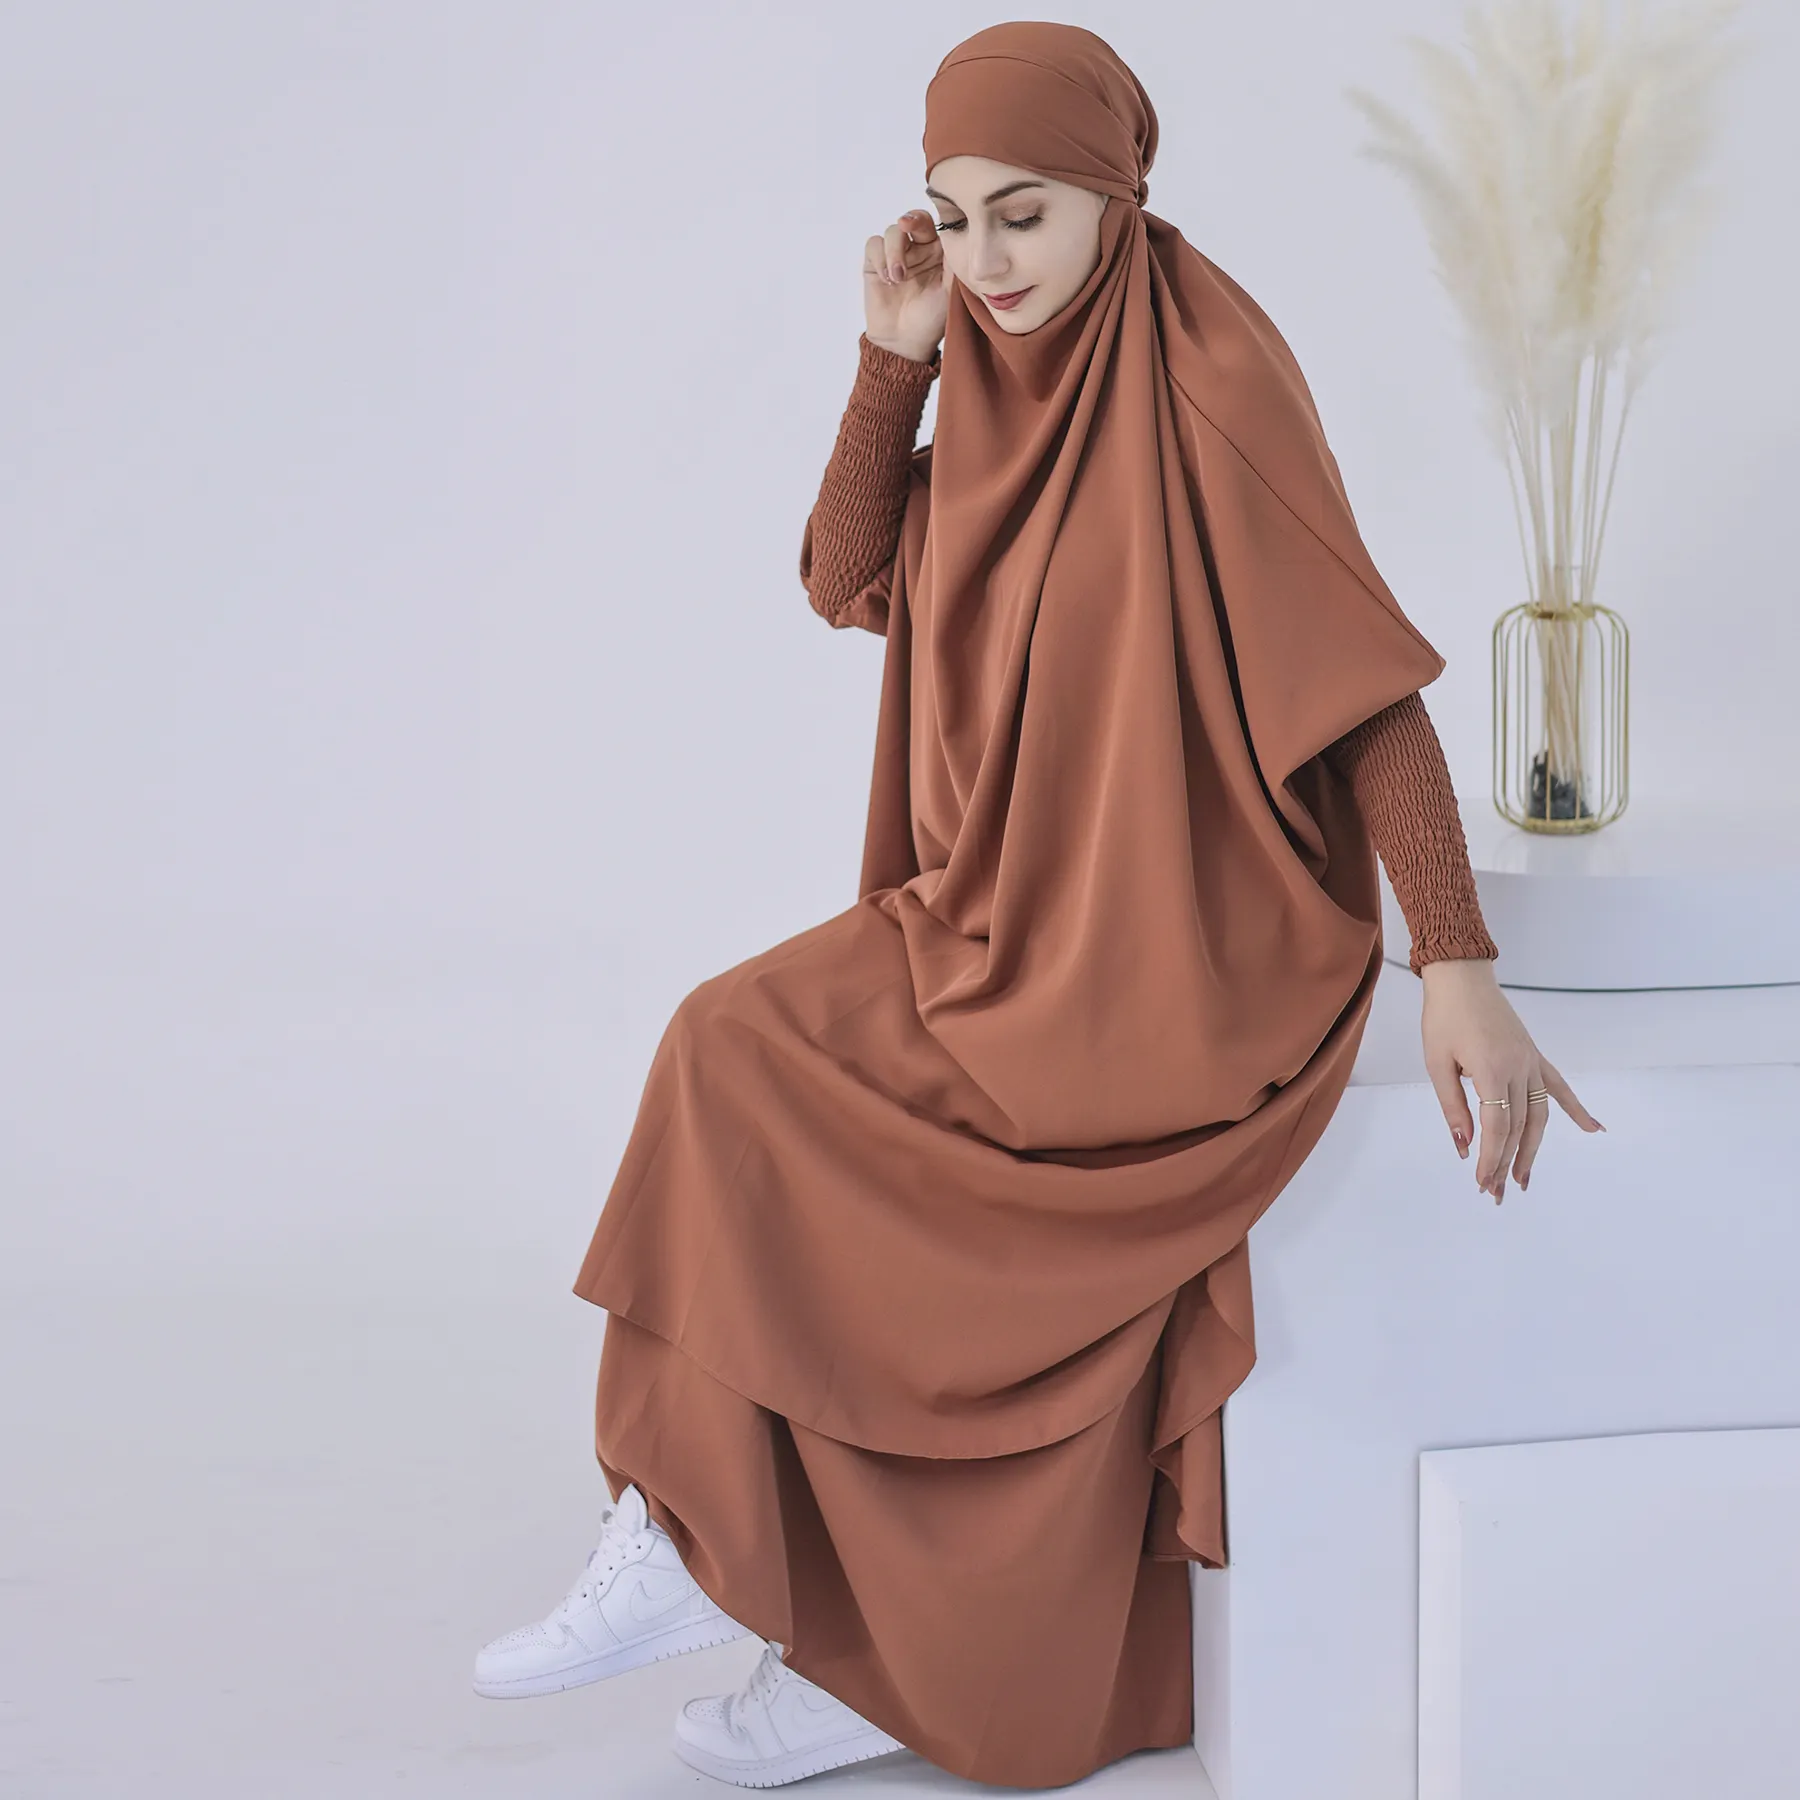 लोरिया फैशन ईआईडी इस्लामी कपड़े भारत और पाकिस्तान कपड़े थोक आधुनिक सबसे अधिक बिकने वाली अबाया महिला मुस्लिम पोशाक प्रार्थना अबाया